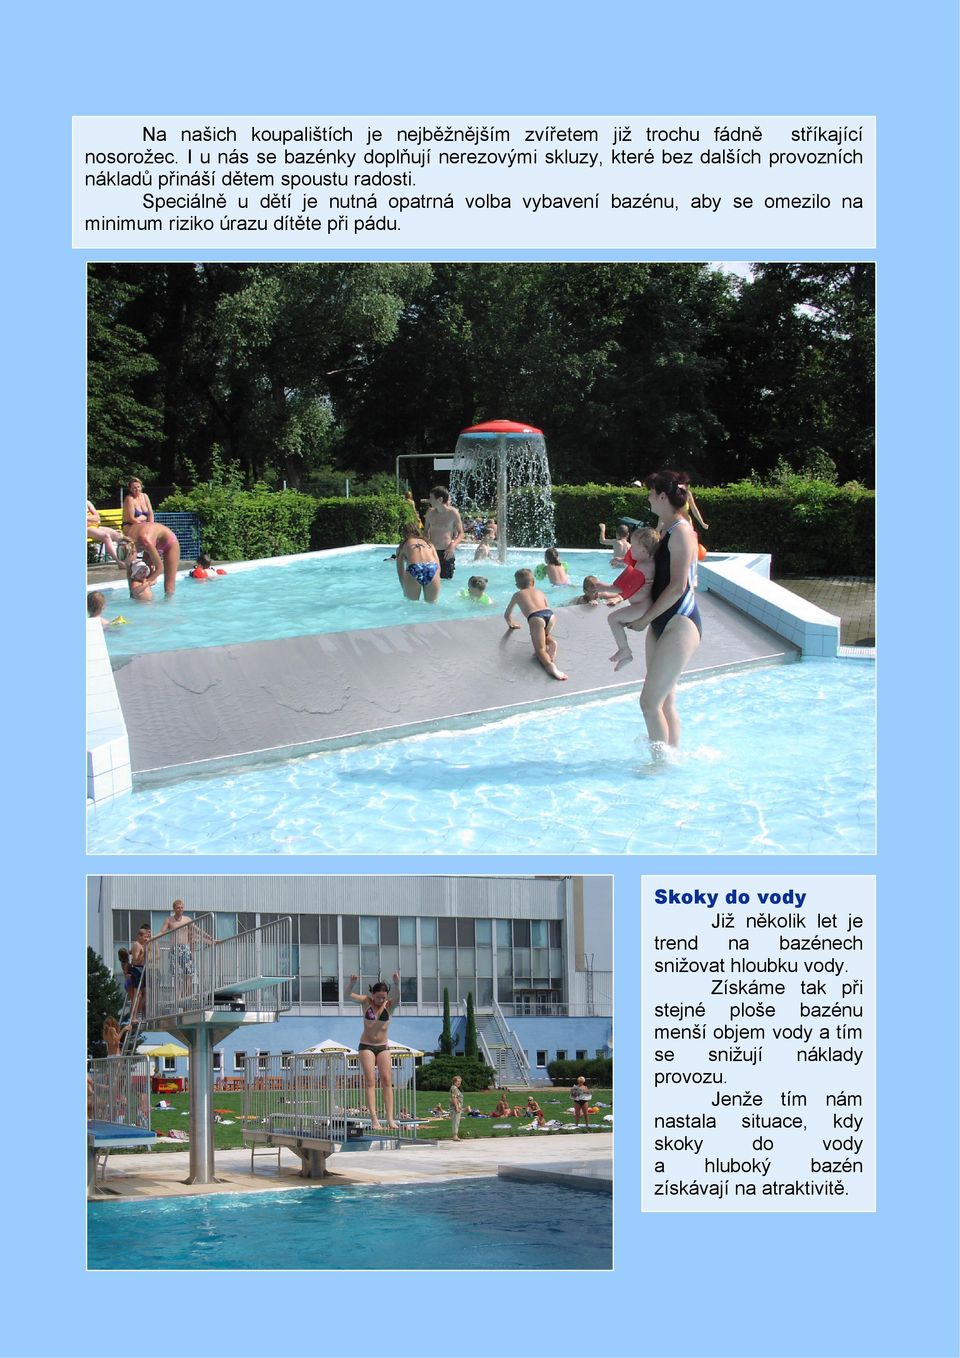 Speciálně u dětí je nutná opatrná volba vybavení bazénu, aby se omezilo na minimum riziko úrazu dítěte při pádu.